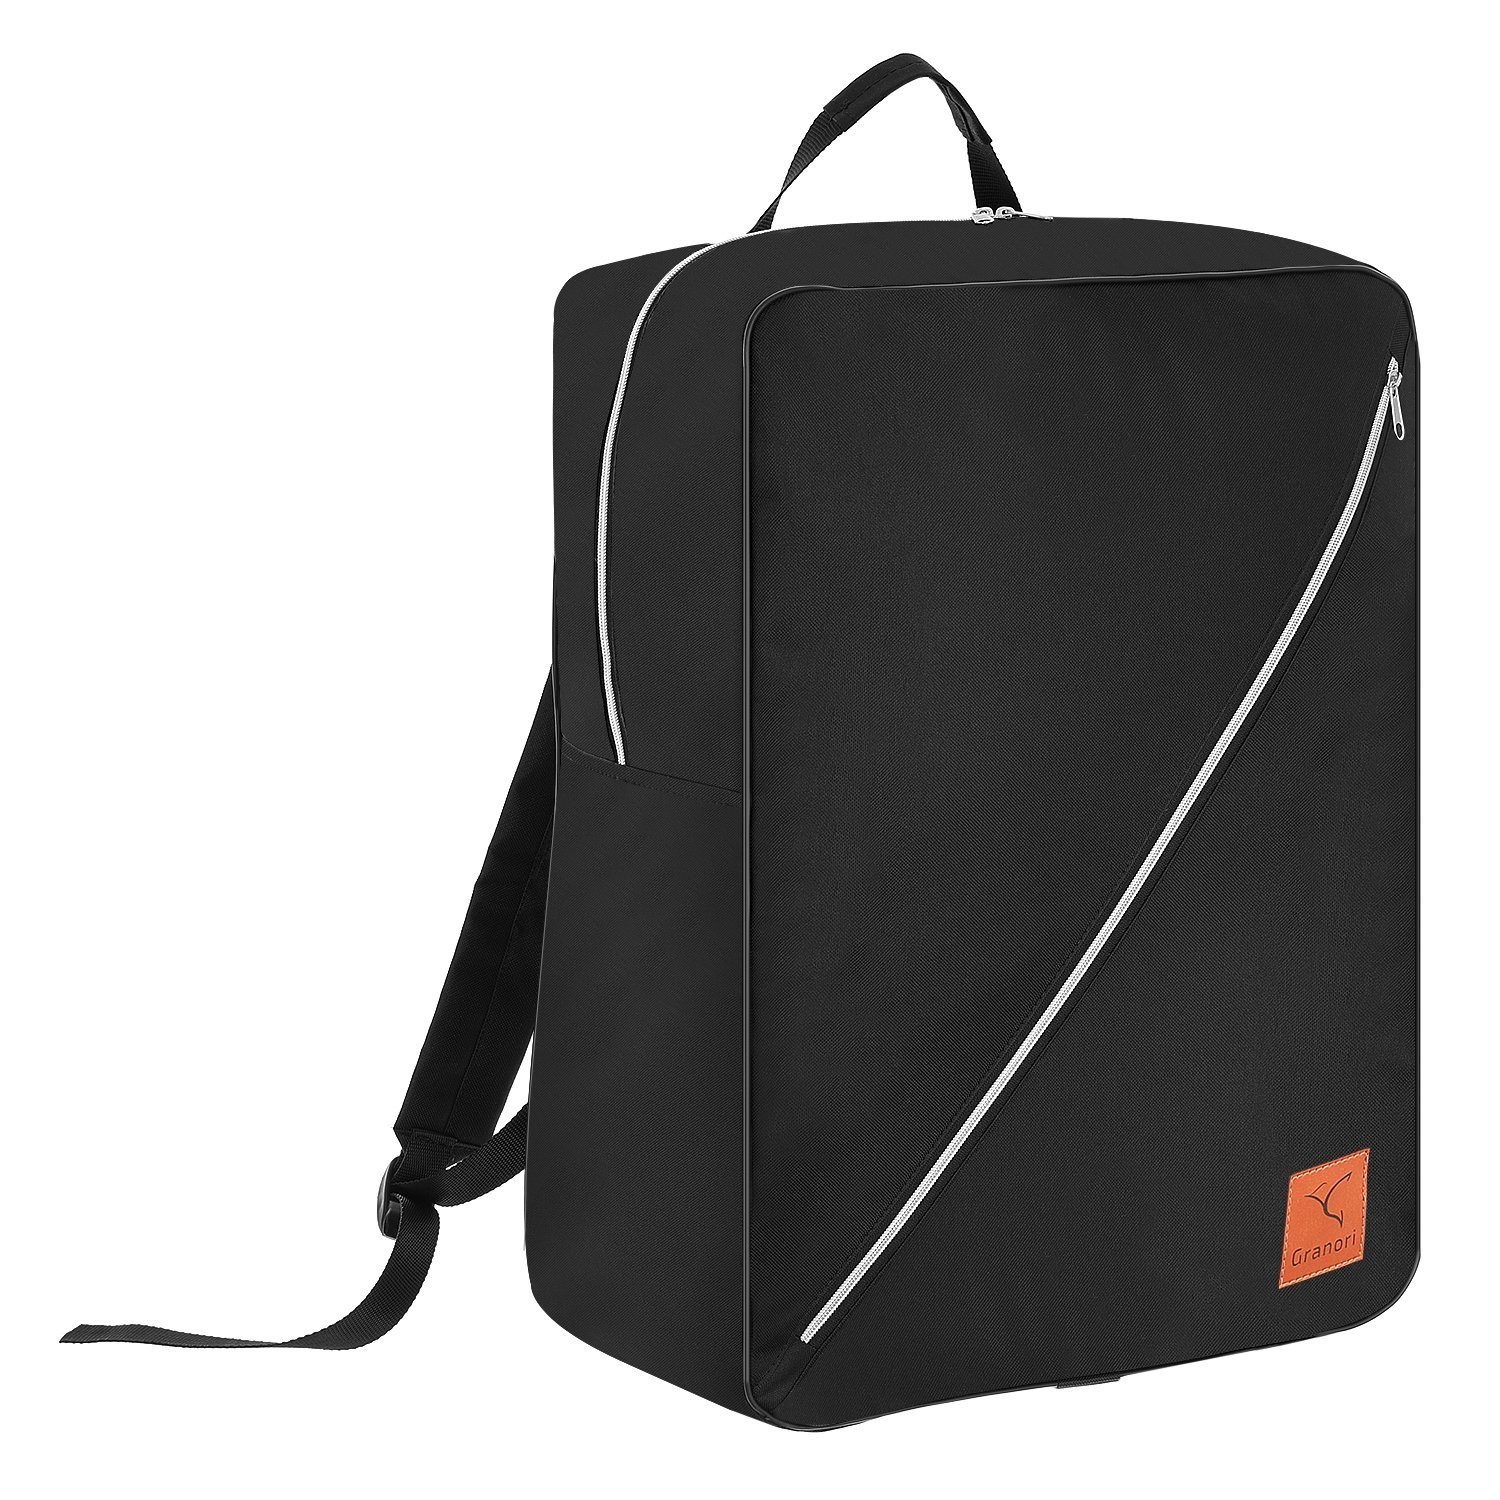 Granori Reiserucksack 55x40x20 cm XL Handgepäck gemäß IATA Empfehlung – leicht & viel Platz, über 40l Fassungsvermögen, mit abschließbarem Hauptfach Schwarz | Reiserucksäcke